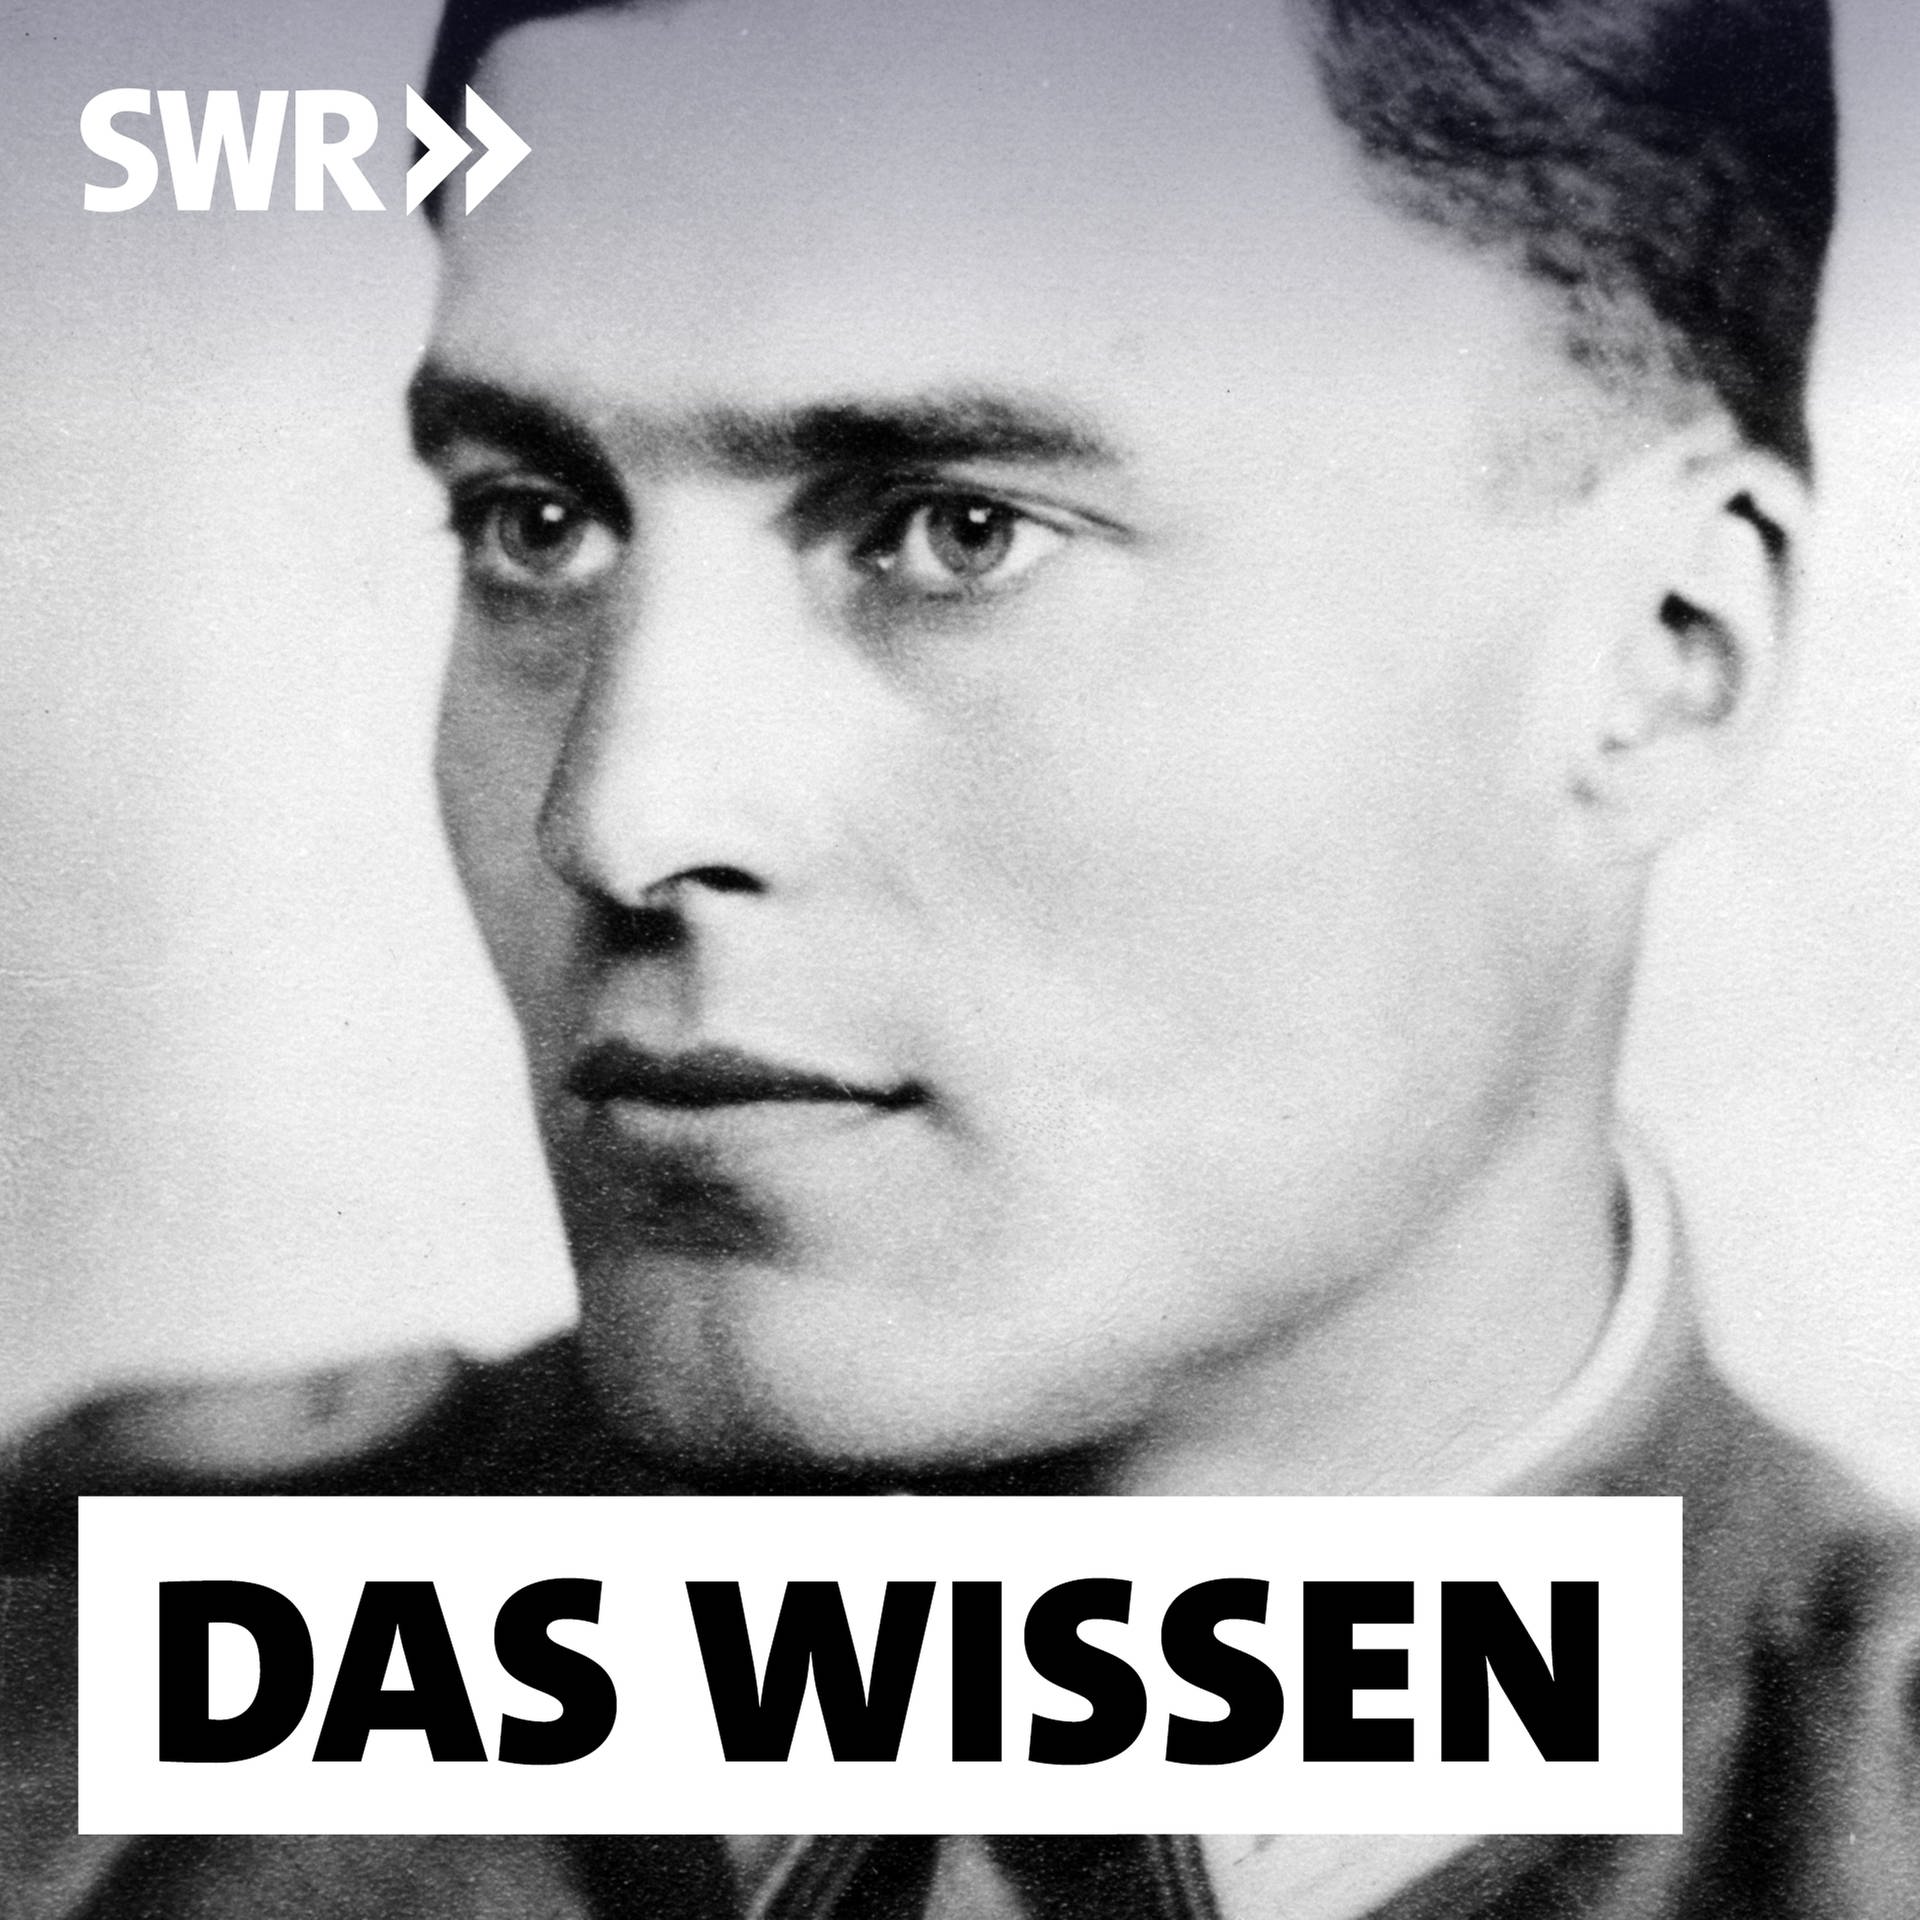 Hitler-Attentäter Stauffenberg – Wie die Widerstands-Ikone polarisiert